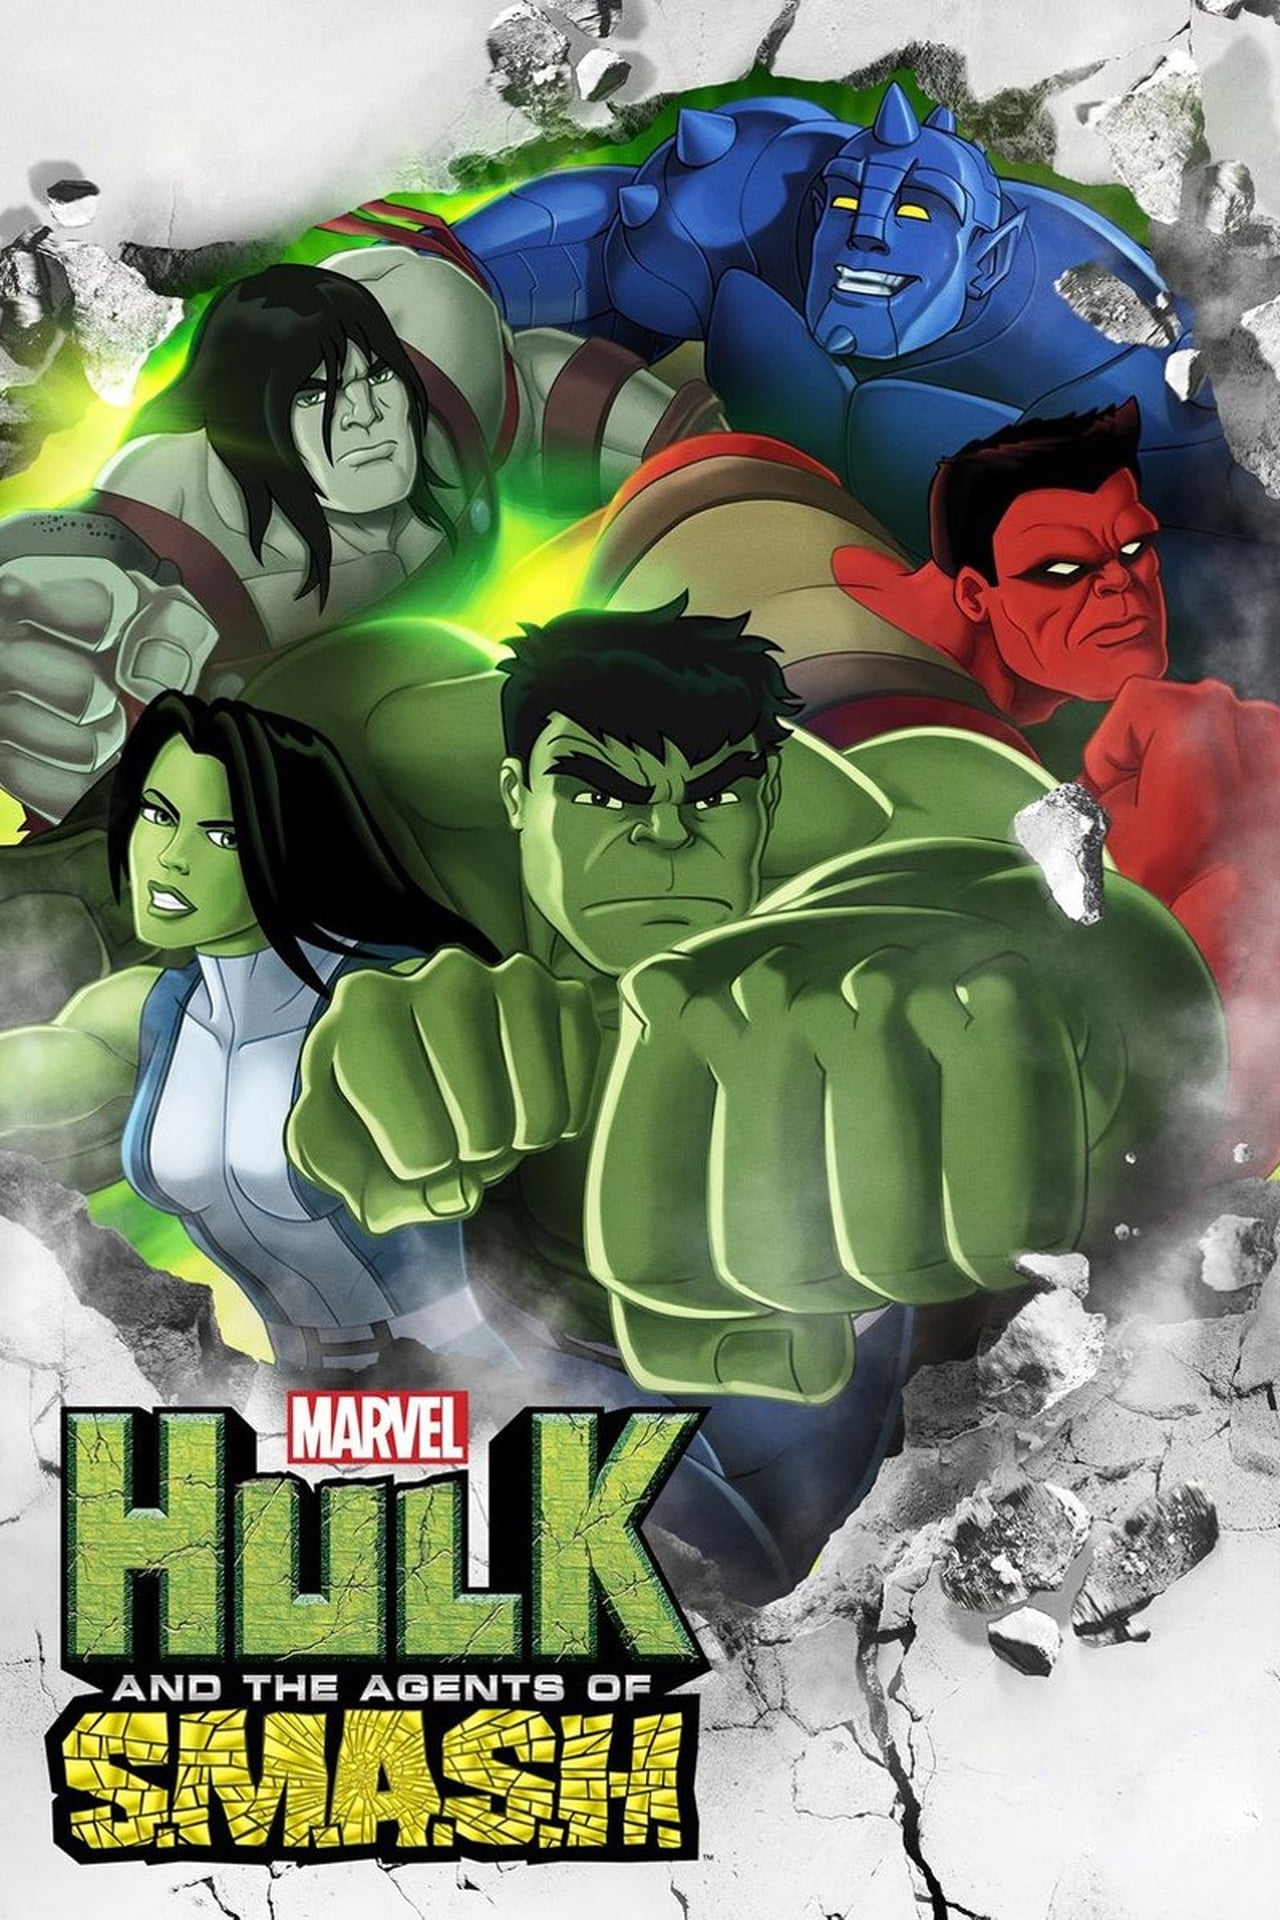 Hulk e os Agentes de S.M.A.S.H.